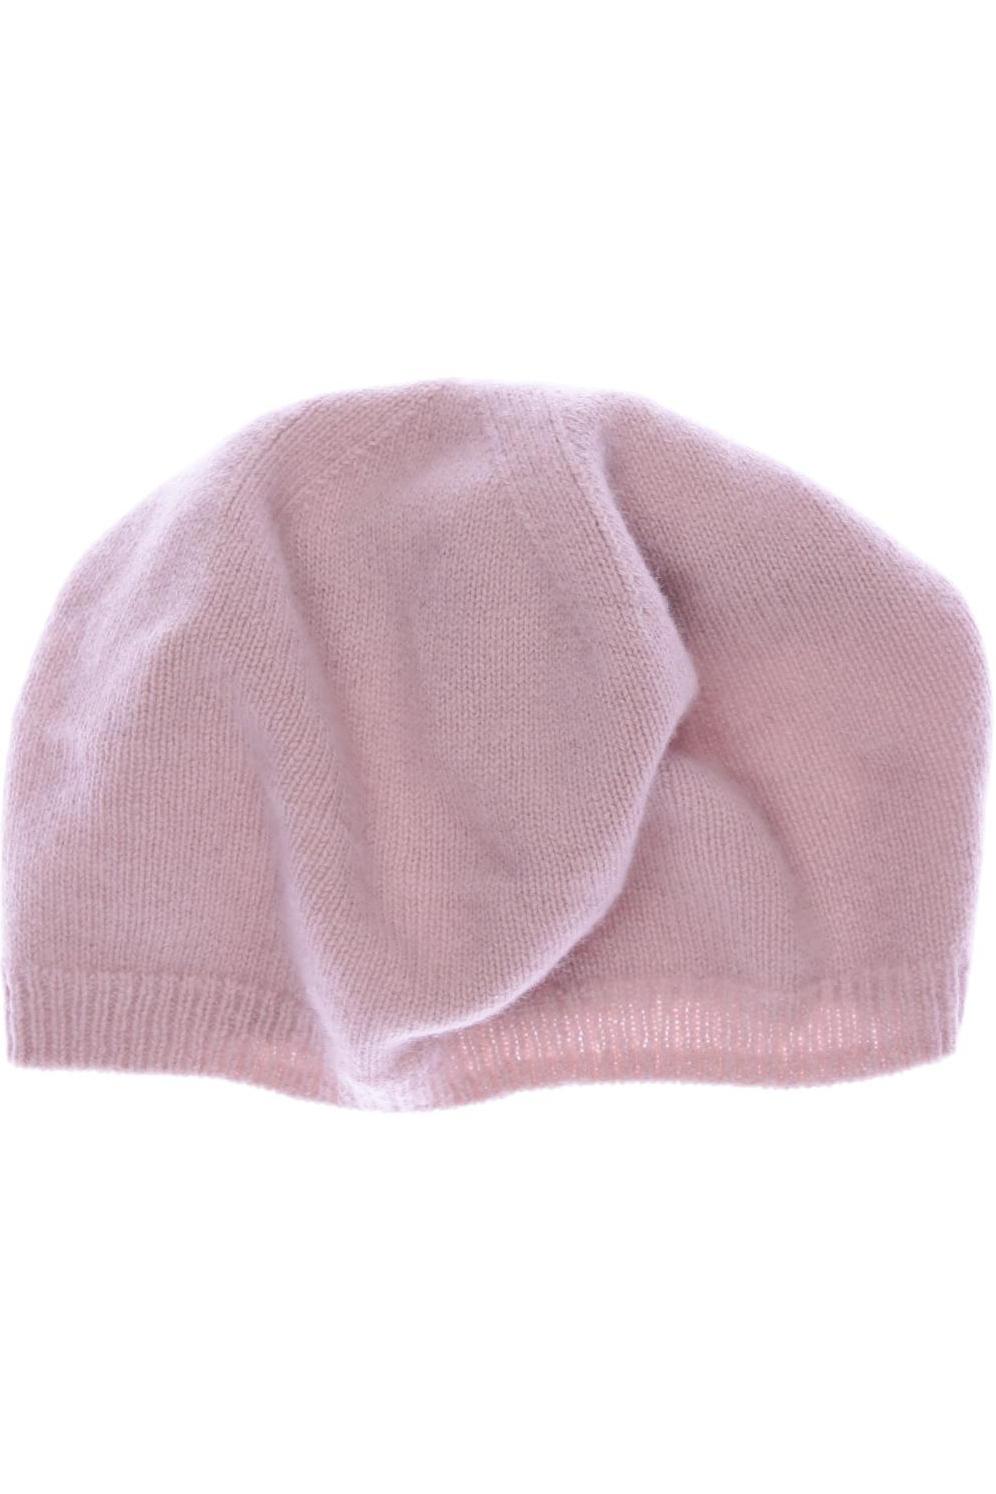 Apriori Damen Hut/Mütze, pink, Gr. uni von Apriori